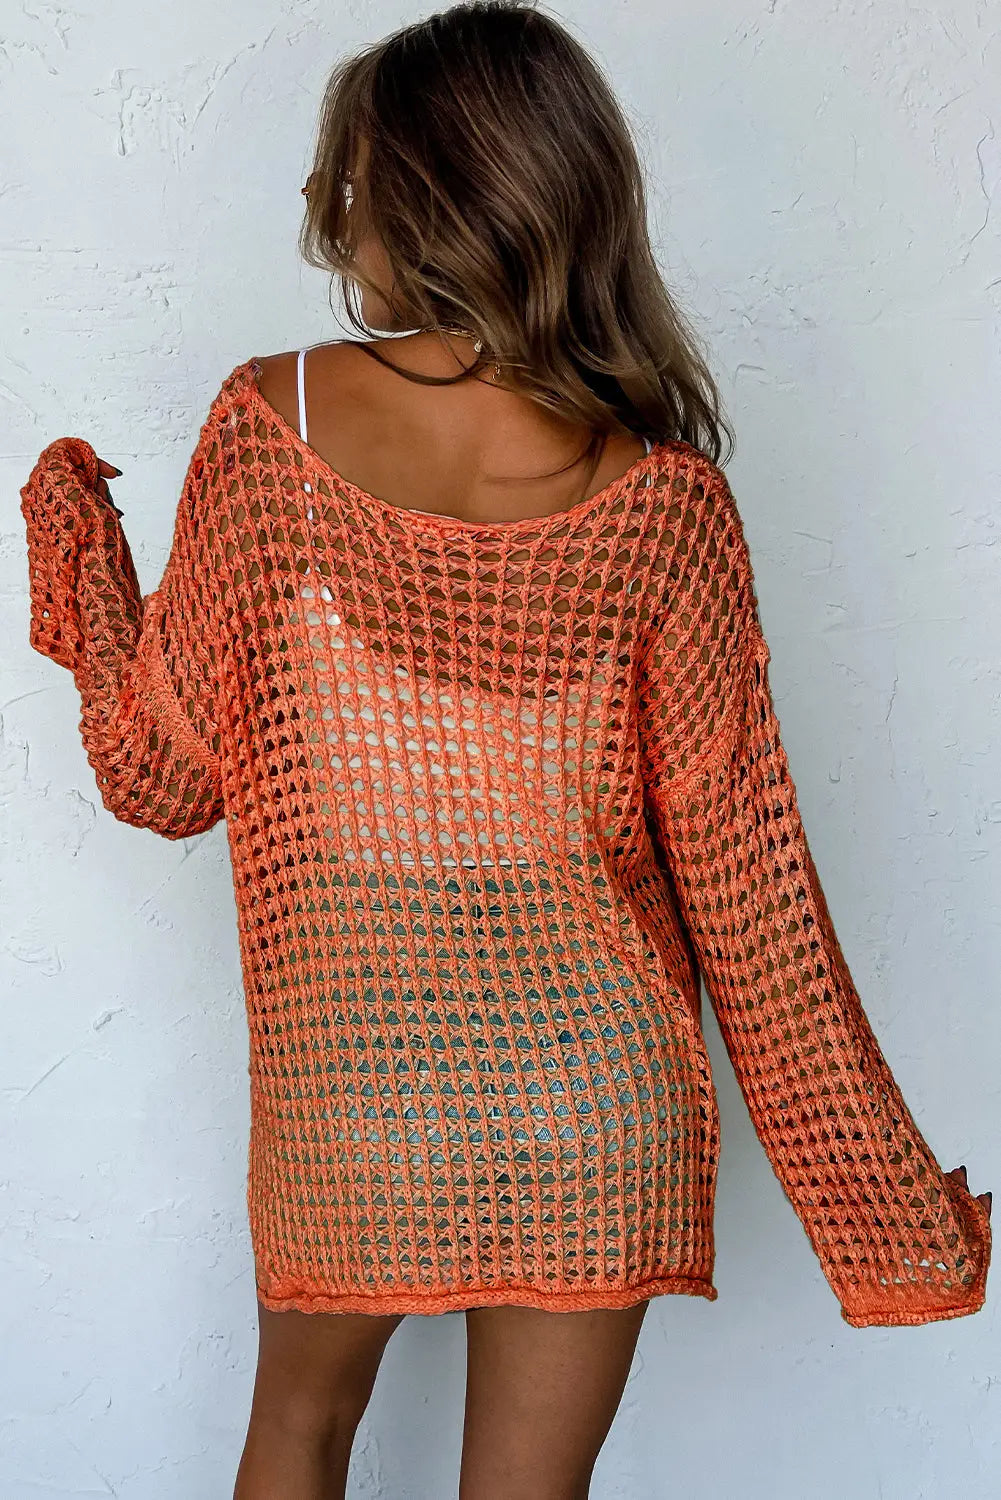 Crochet top - orange open knit bell sleeve tunic sweater - sweaters